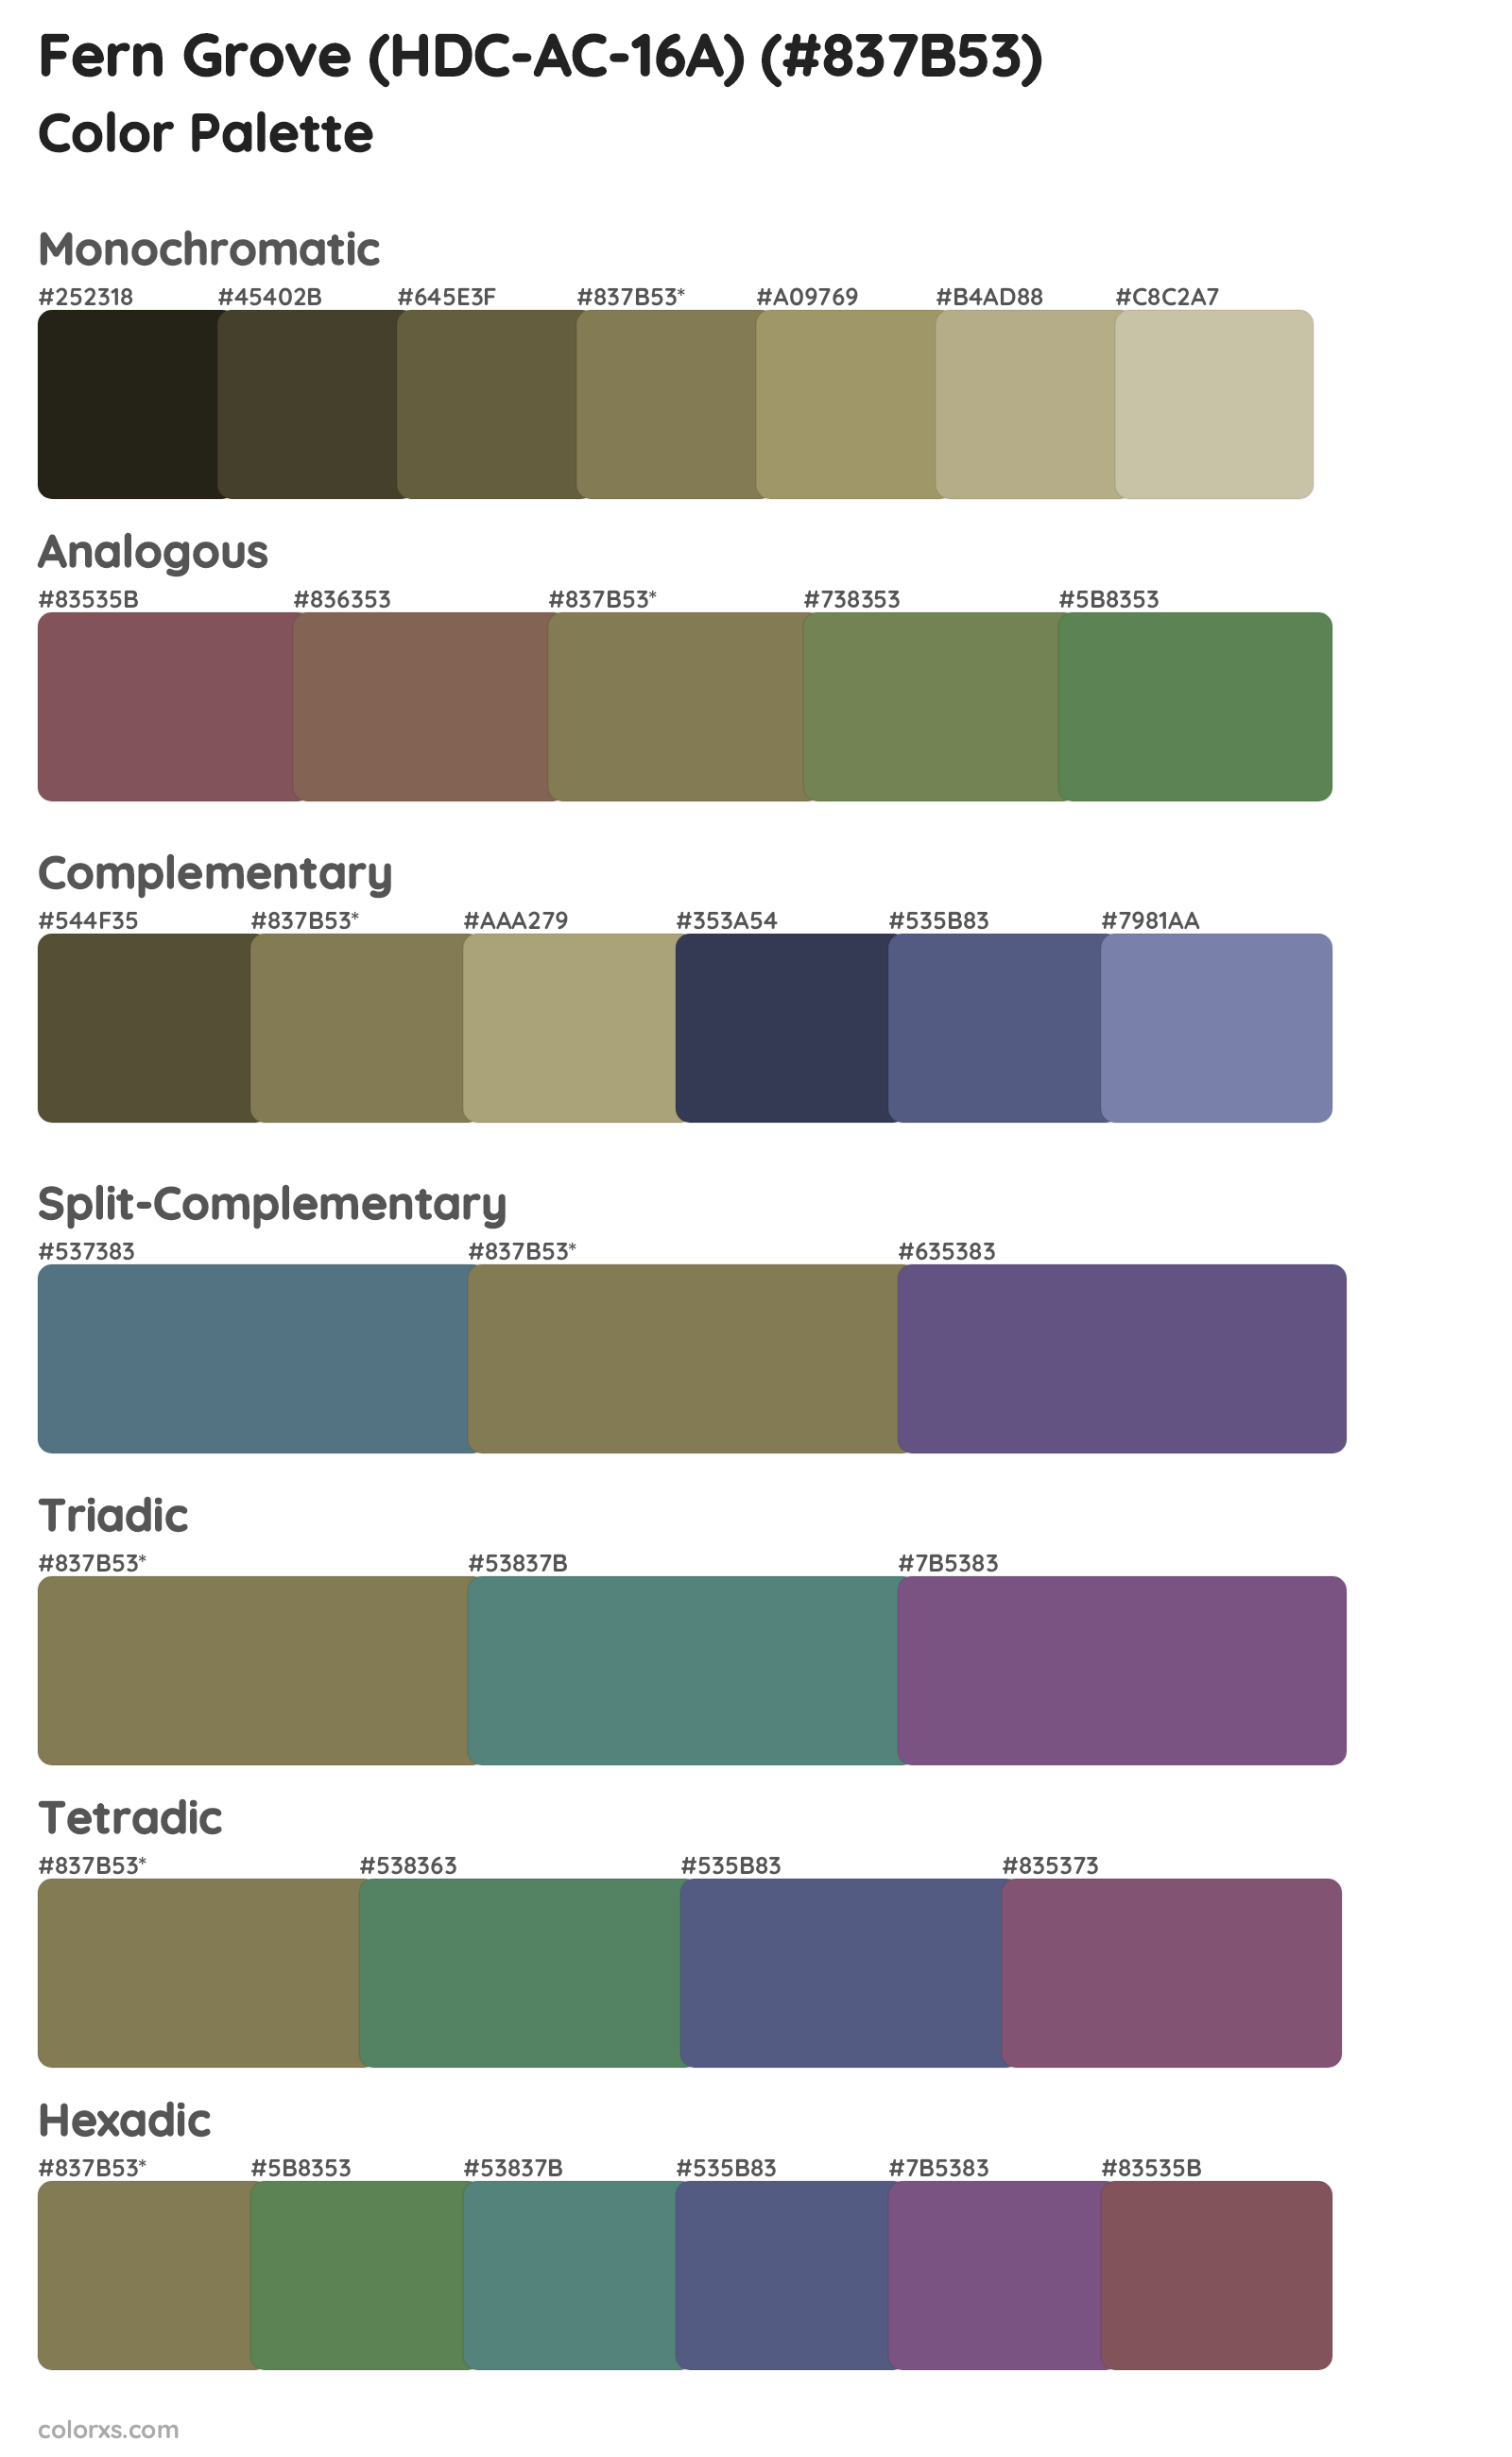 Fern Grove (HDC-AC-16A) Color Scheme Palettes